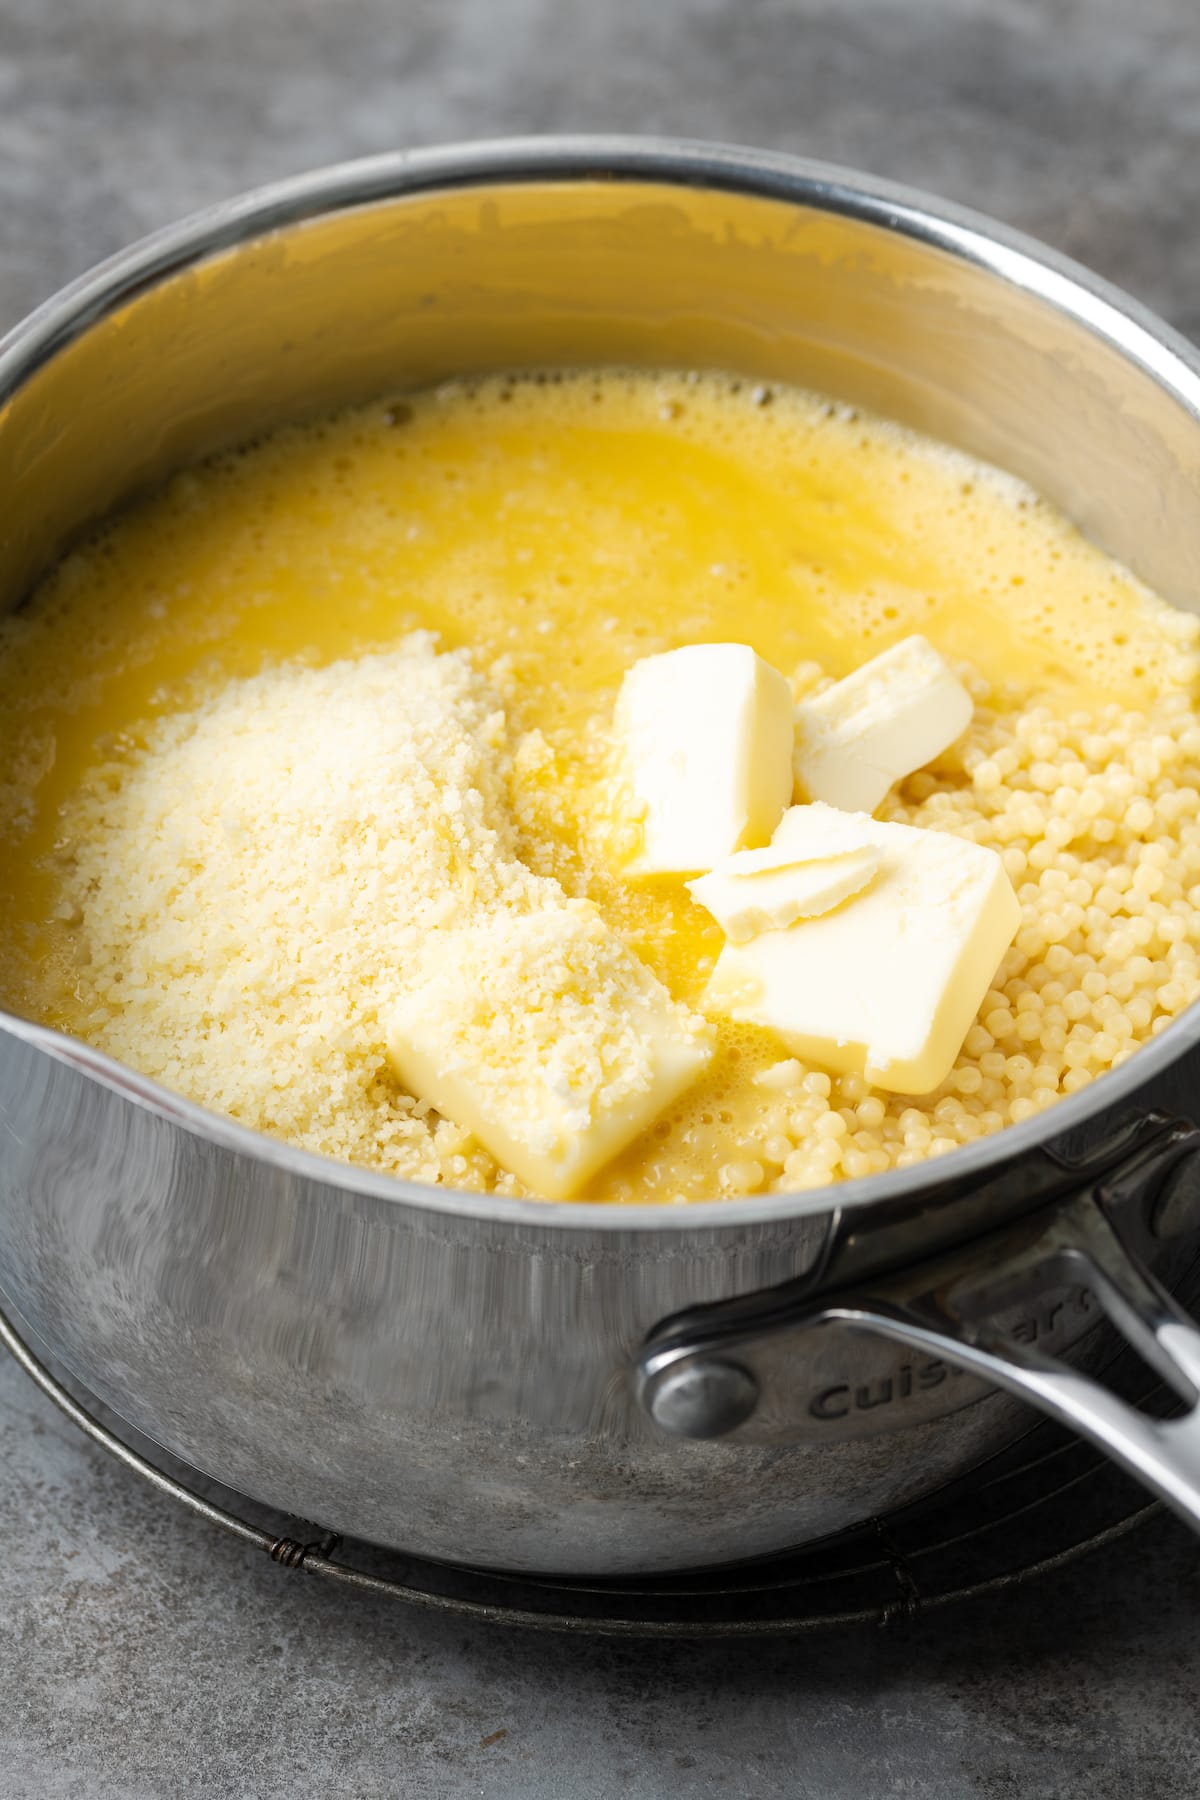 Mantequilla, queso parmesano y huevo agregados a una olla de pasta pastina.